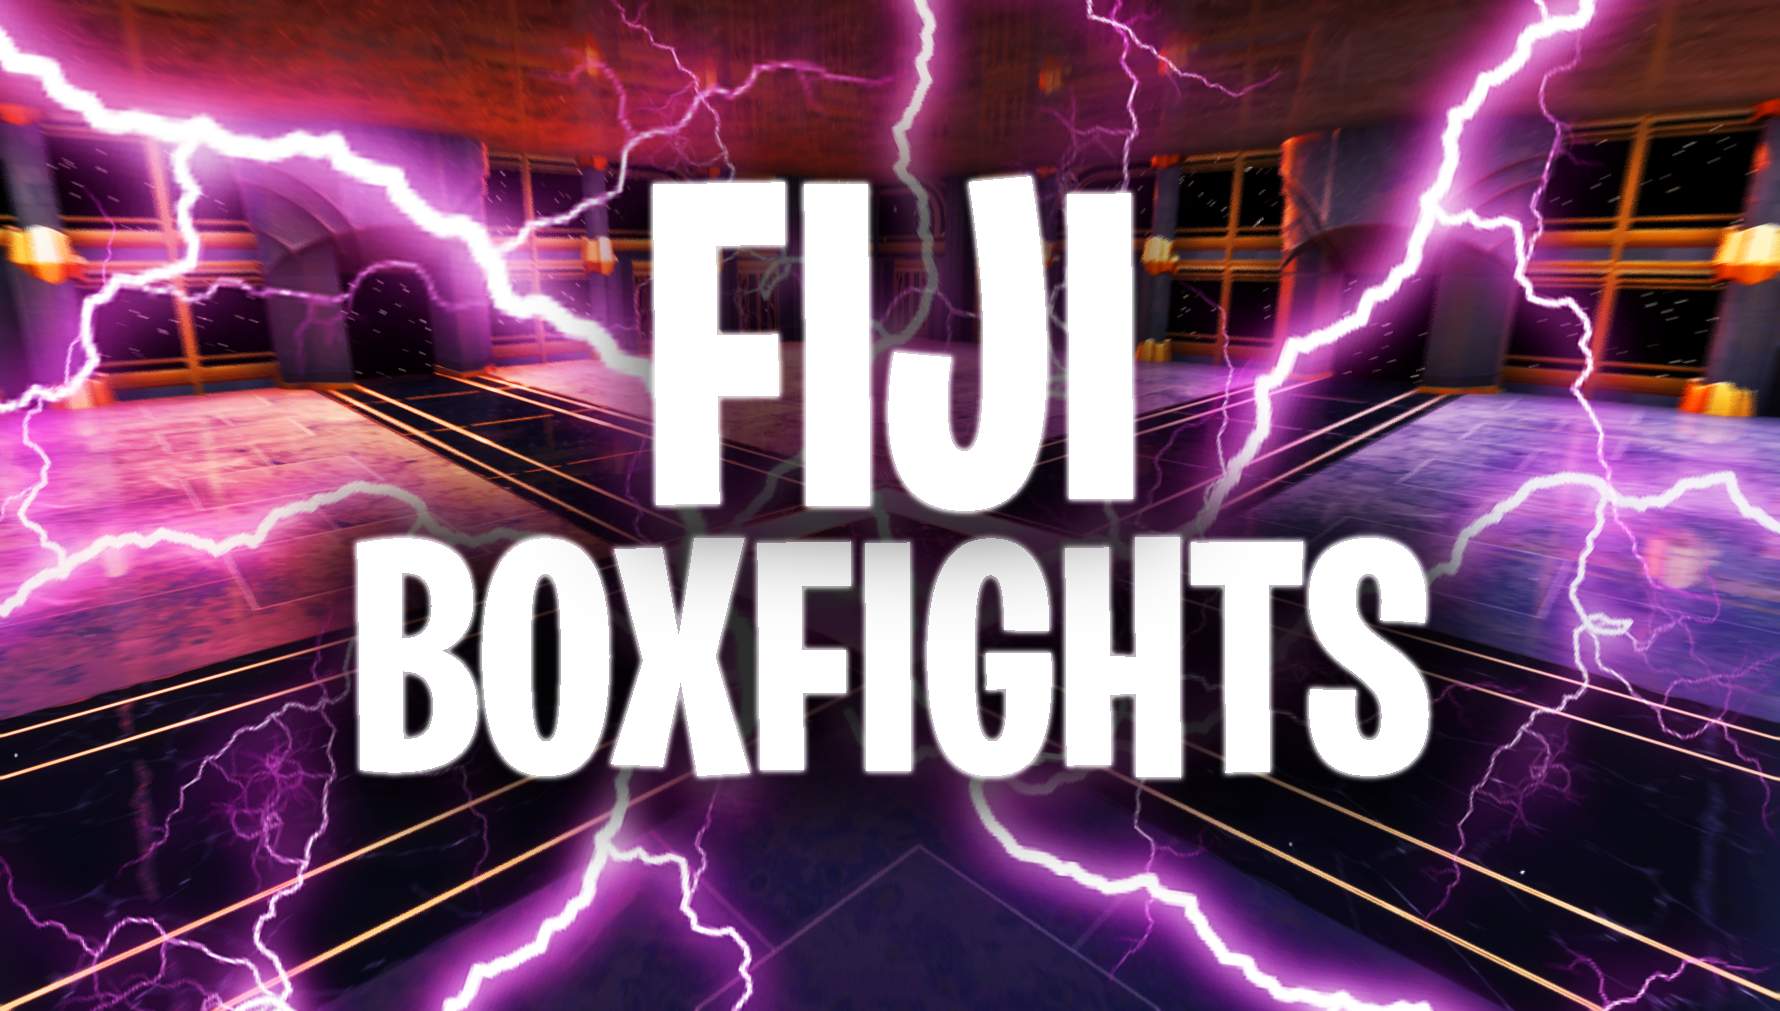 FFA: FIJI BOXFIGHTS